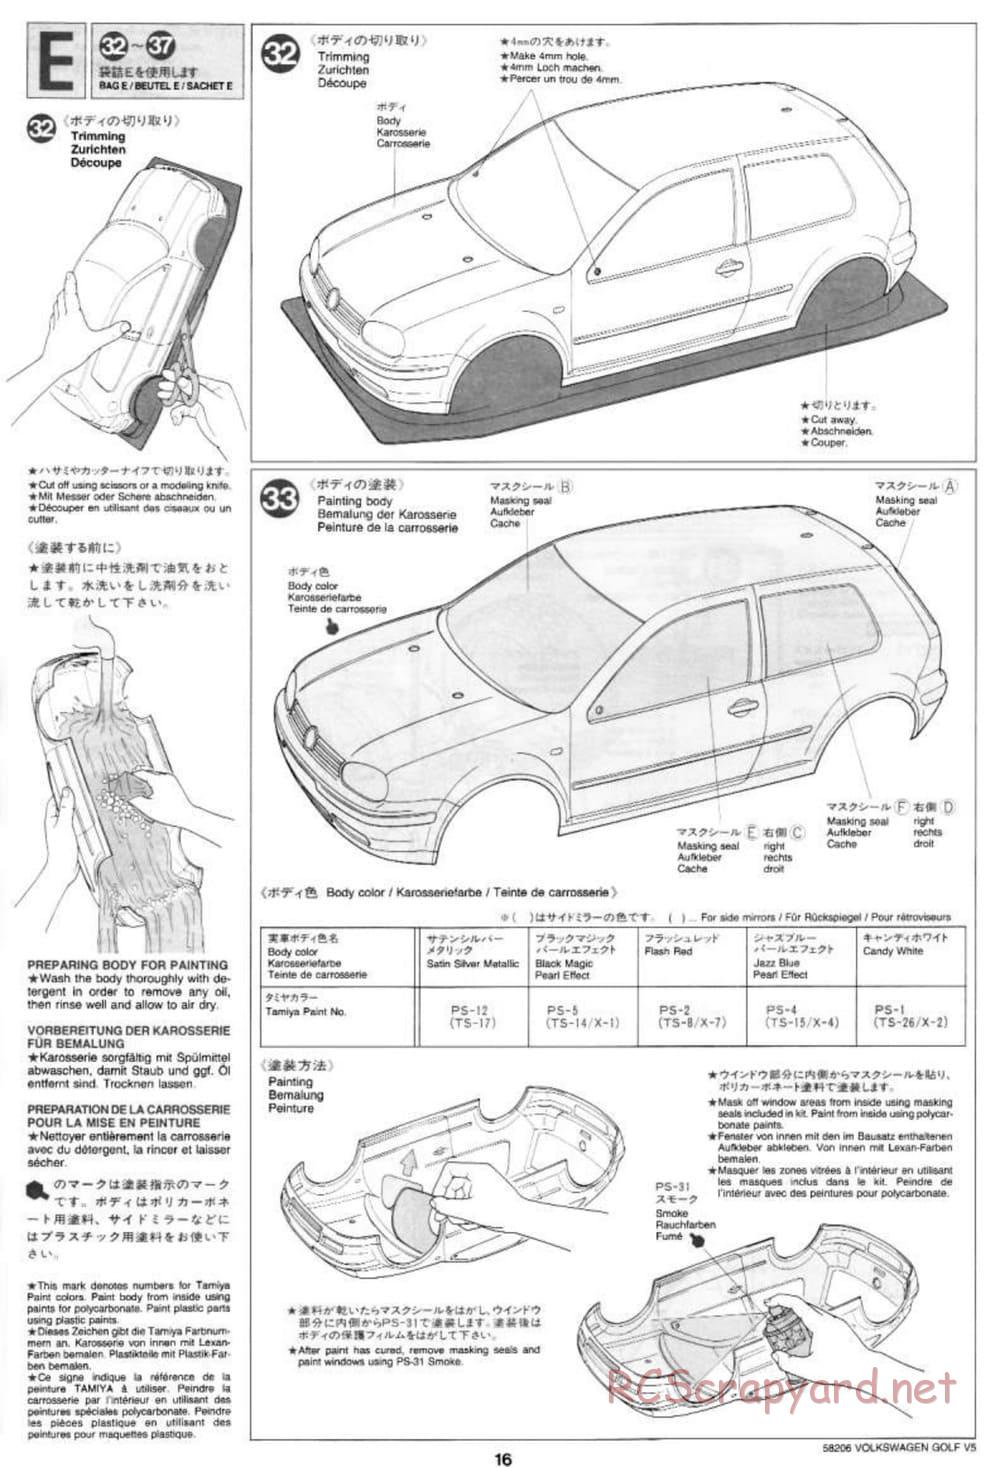 Tamiya - Volkswagen Golf V5 - FF-01 Chassis - Manual - Page 16